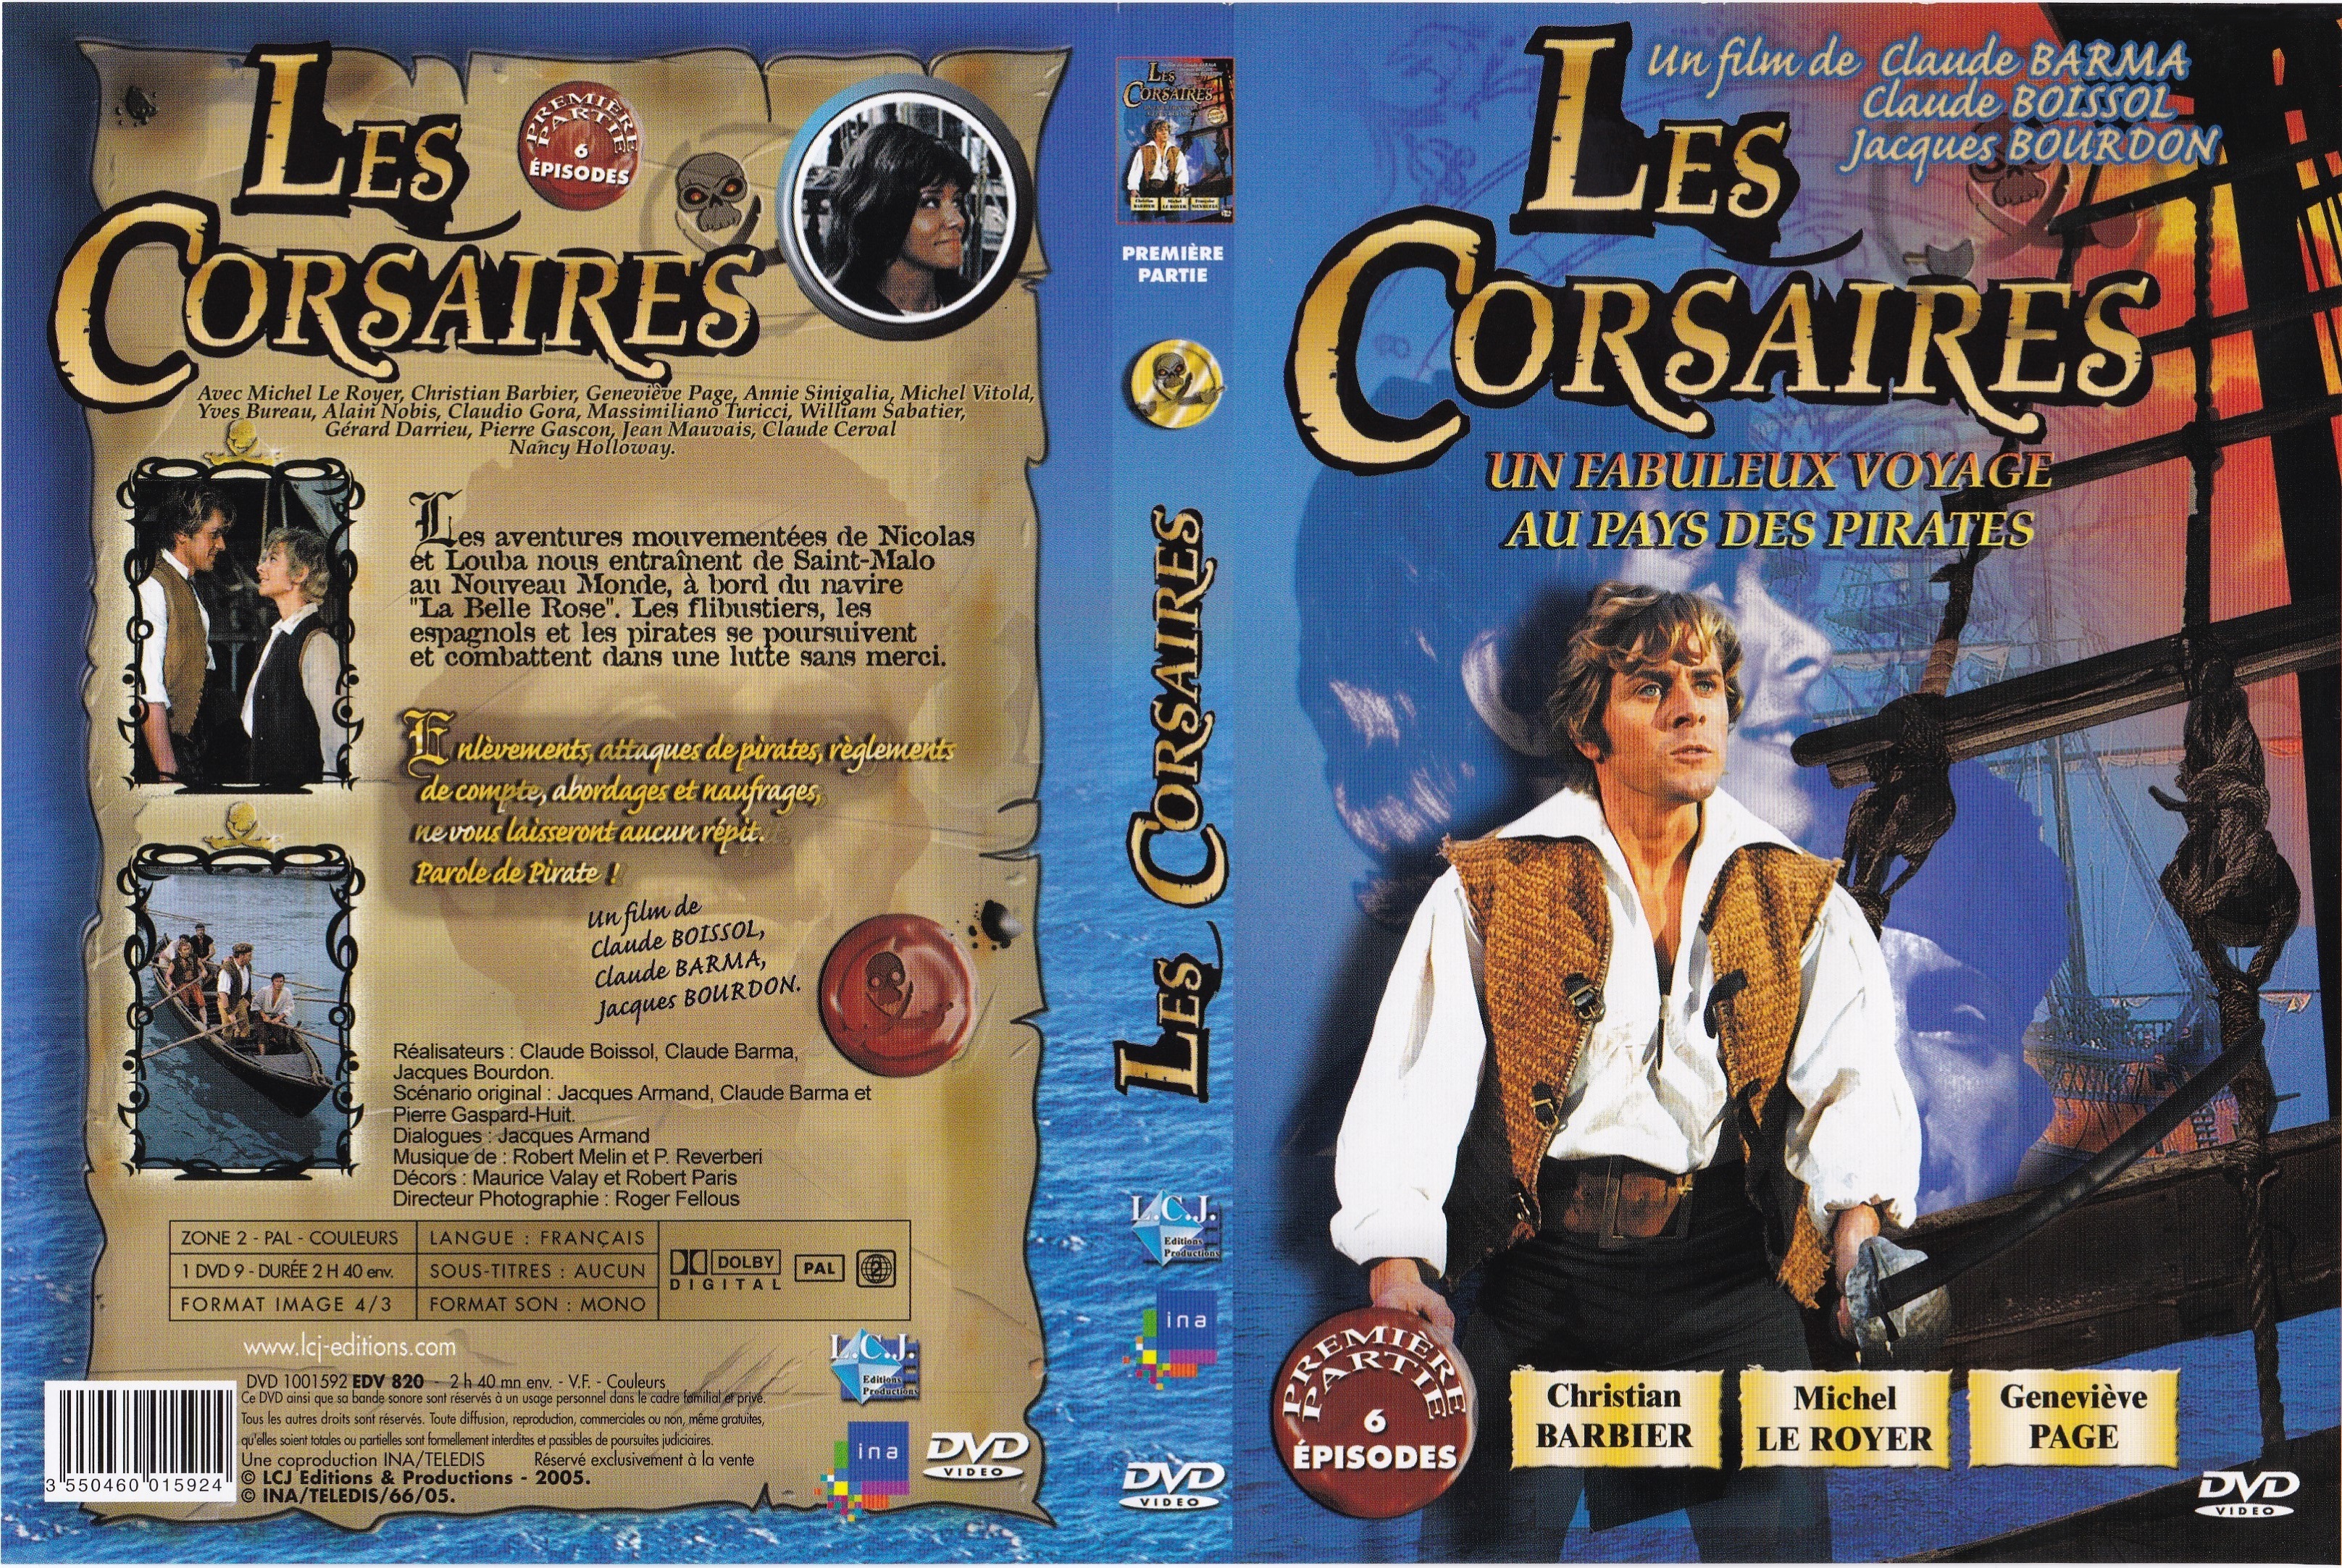 Jaquette DVD Les Corsaires DVD 1